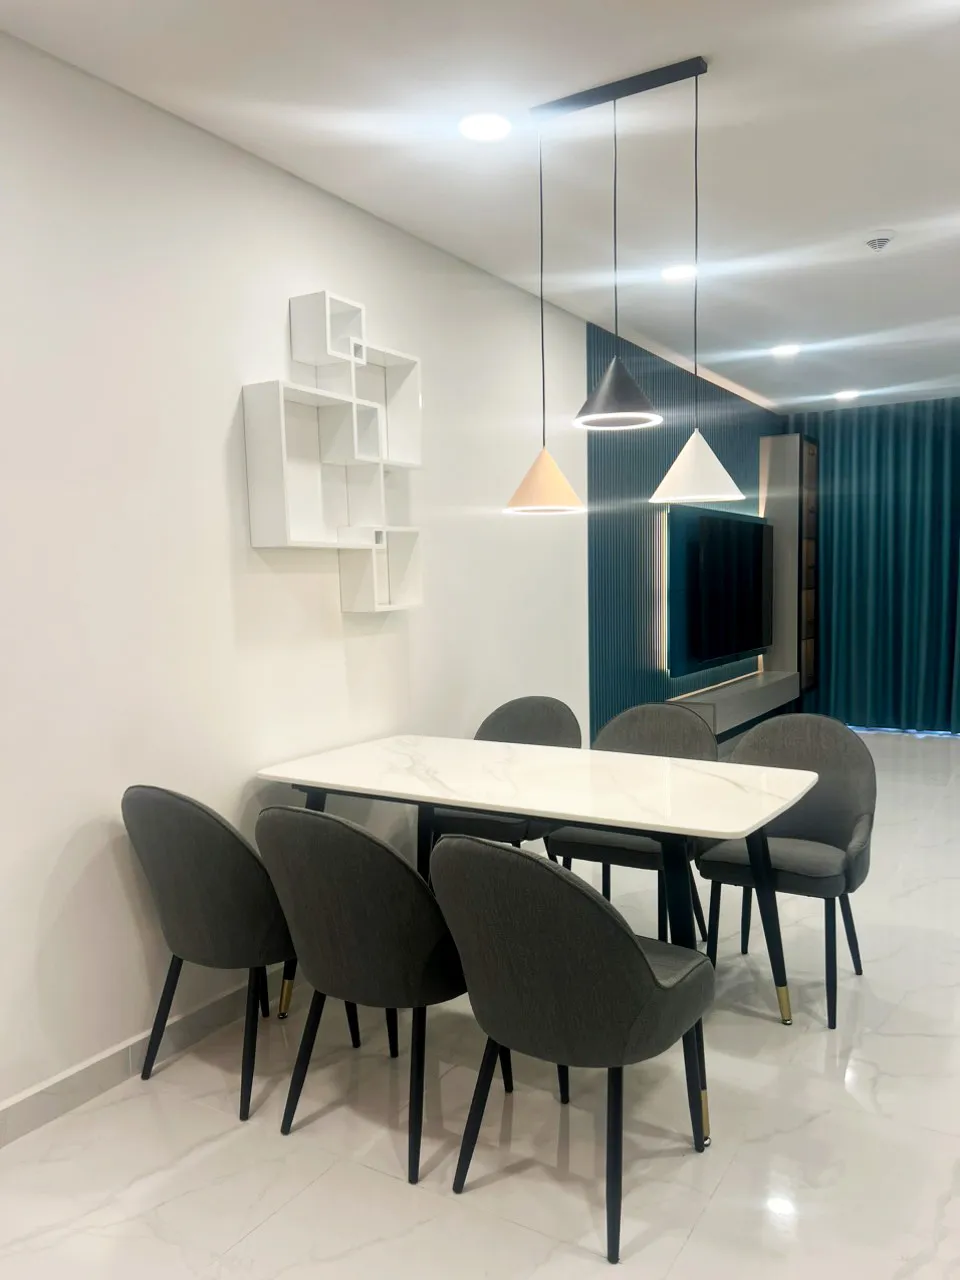 Hoàn thiện nội thất phòng ăn Căn hộ chung cư Celadon Tân Phú 95m2 mang phong cách Modern hiện đại